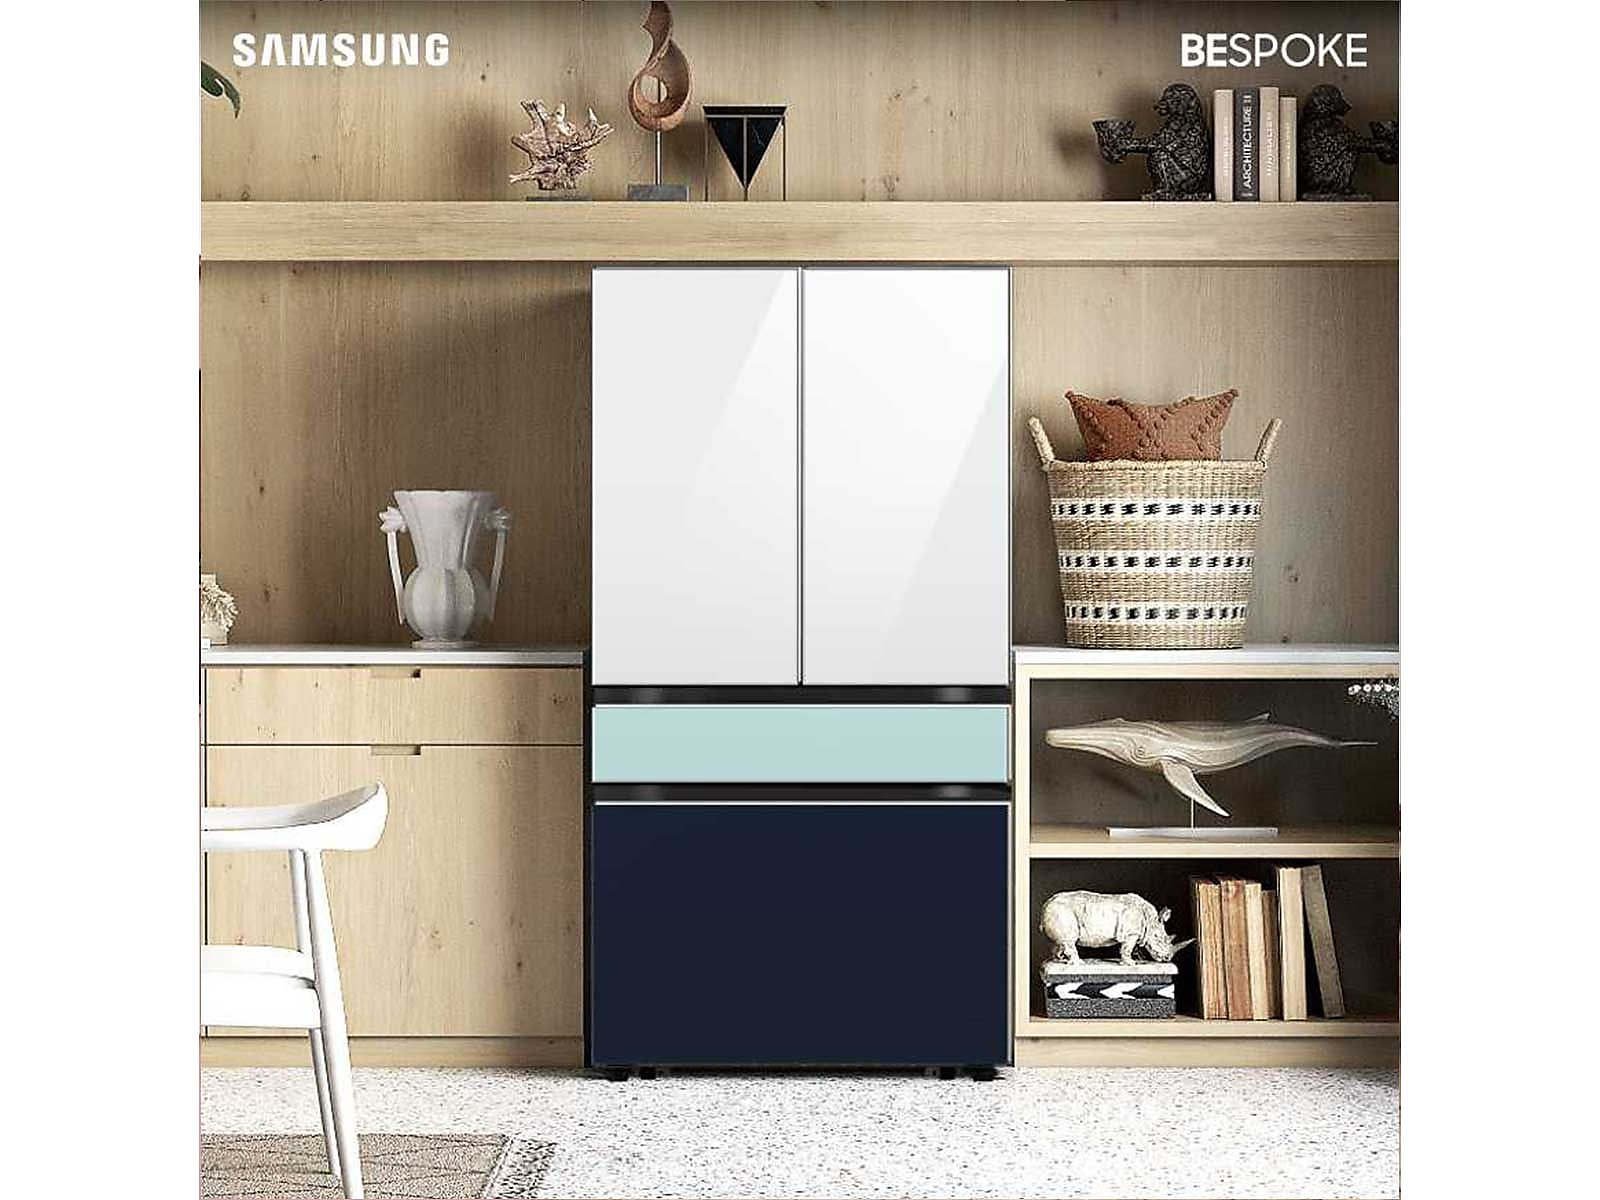 Samsung Bespoke 4-Door French Door Refrigerator (23 cu. ft.) with Beverage Center™ in White Glass Top